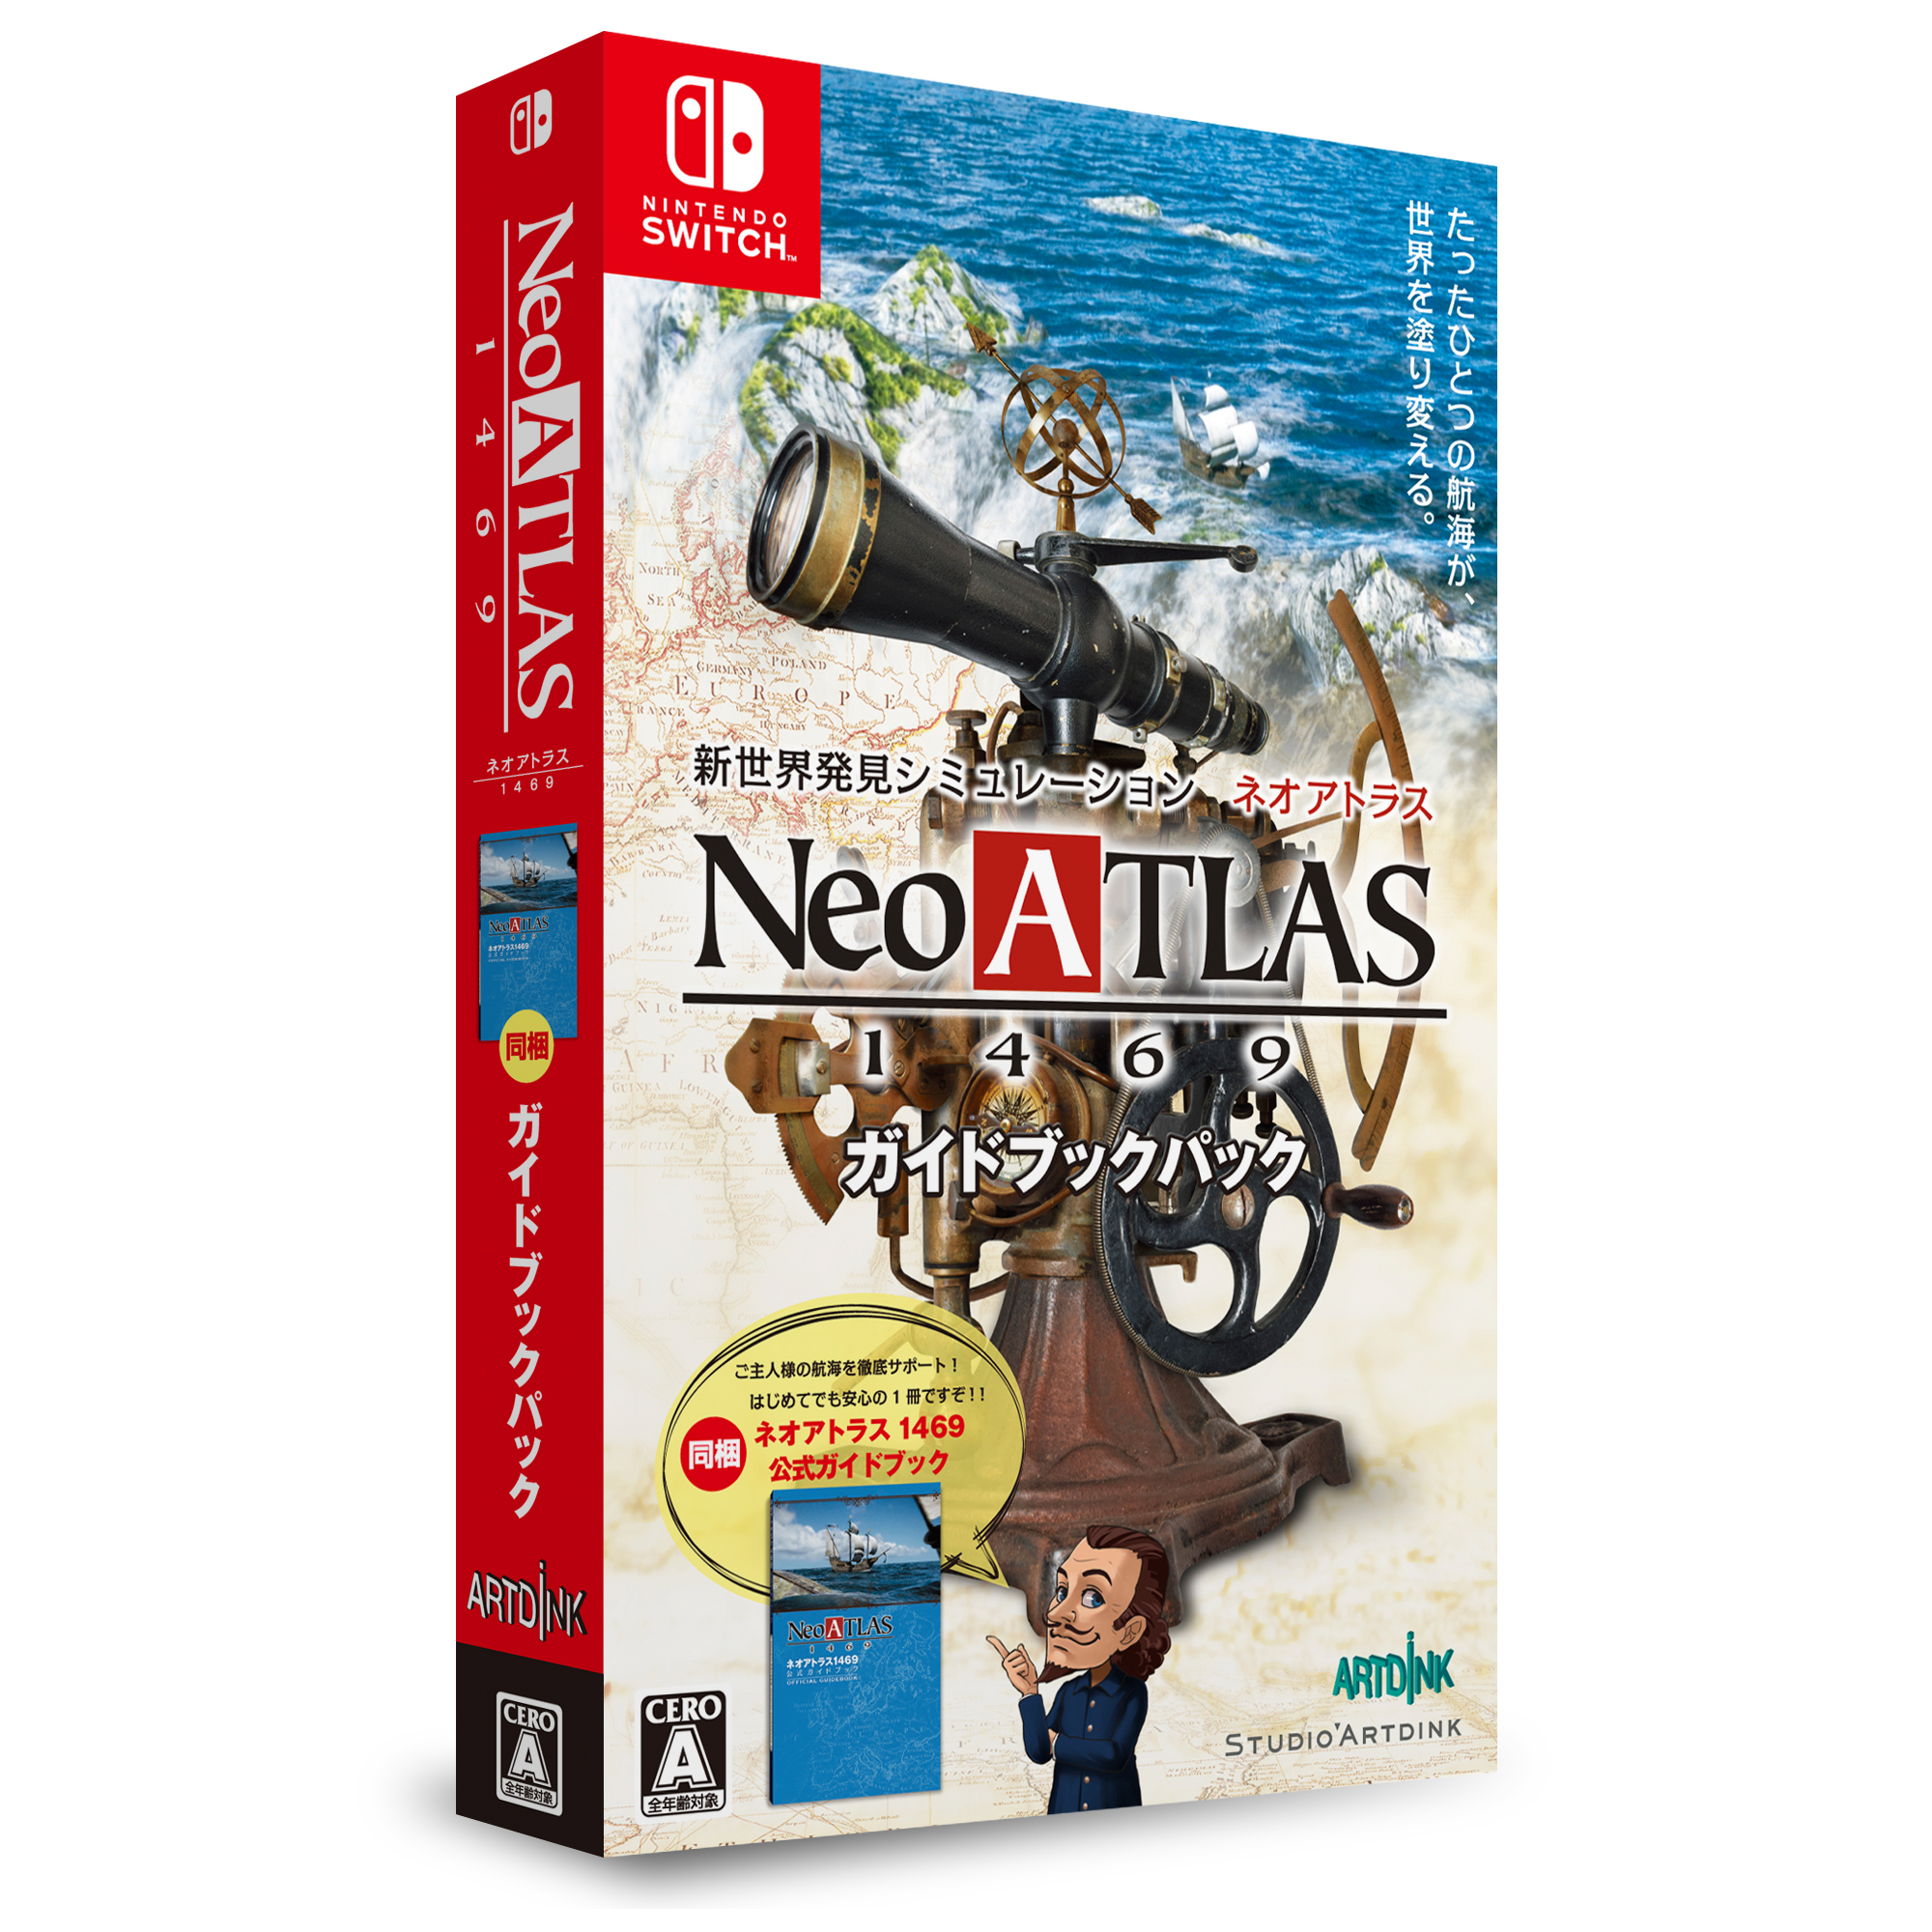 「ネオアトラス 1469」、Nintendo Switchでの発売が決定！ - GAME Watch